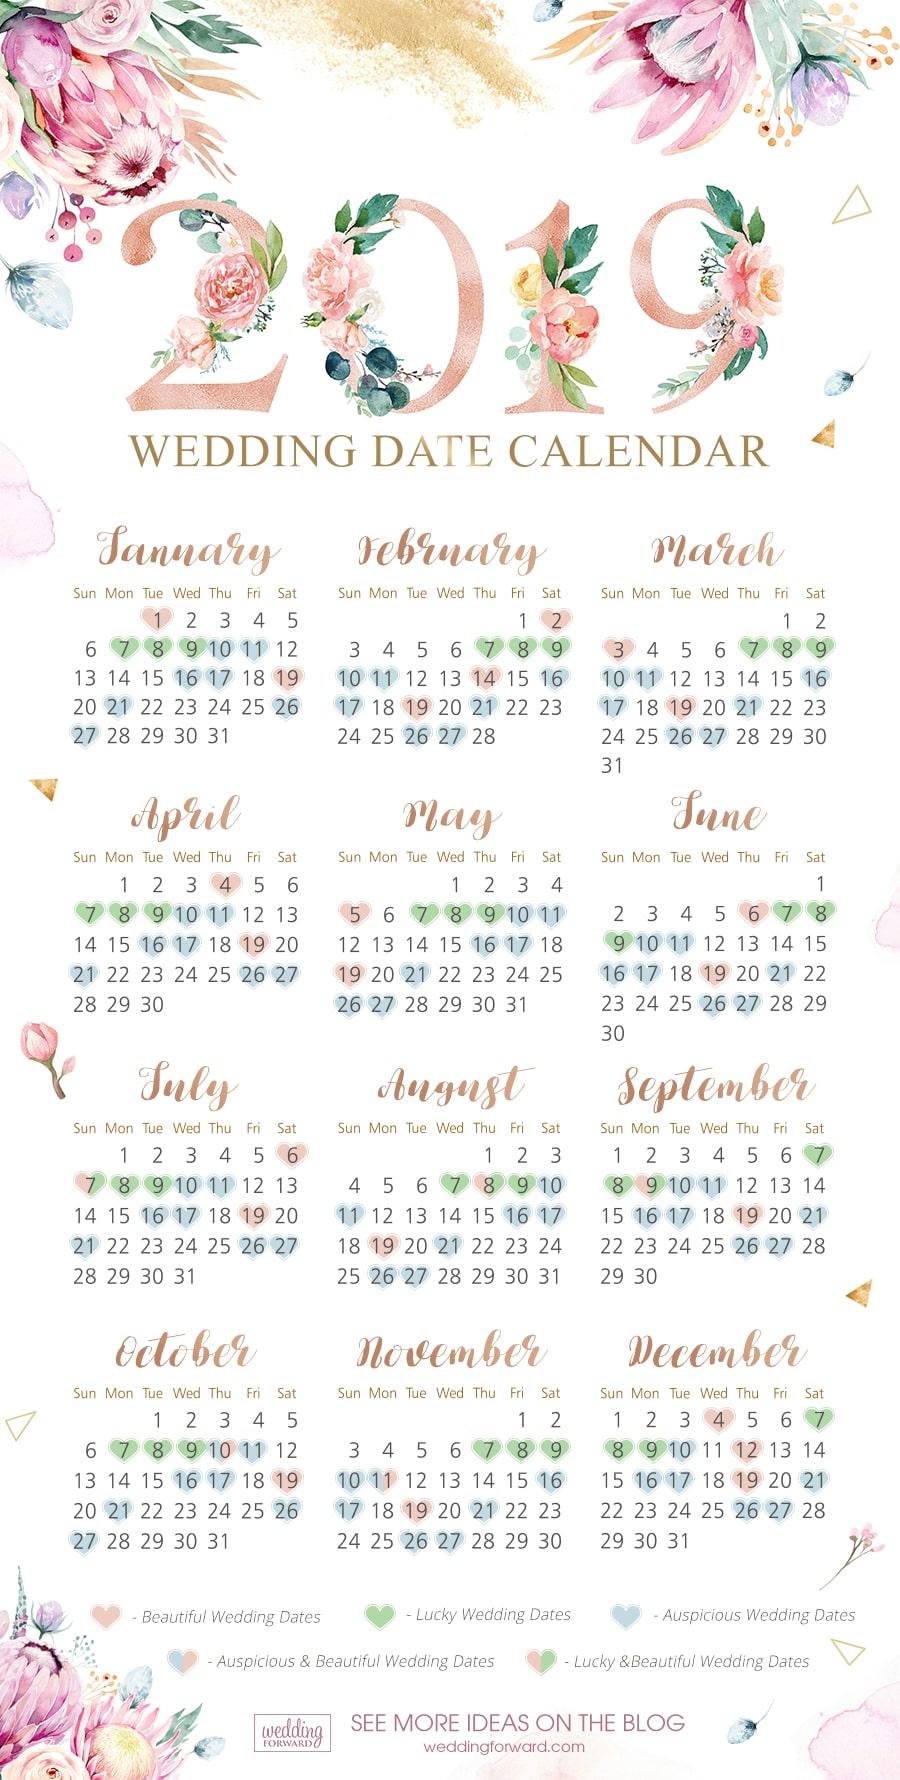 Lucky wedding dates 2019, wedding date calendar